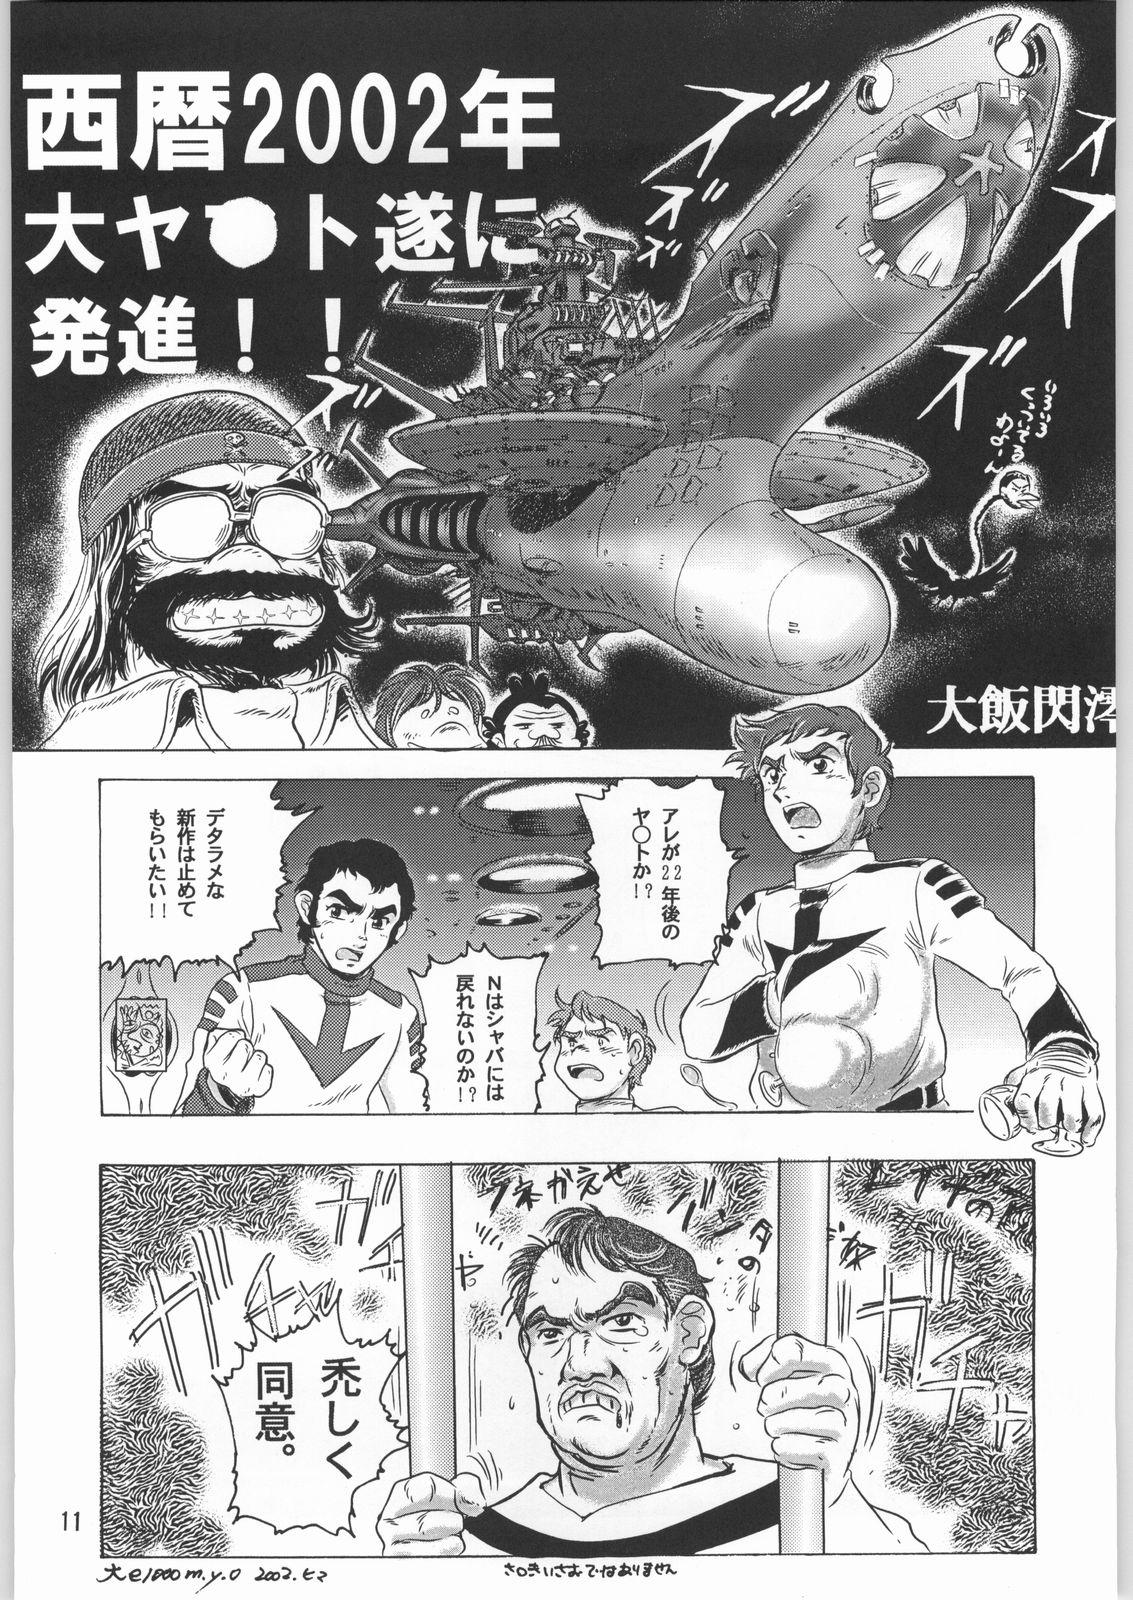 Redhead Megaton Punch 1 - Space battleship yamato Chobits Gayemo - Page 10